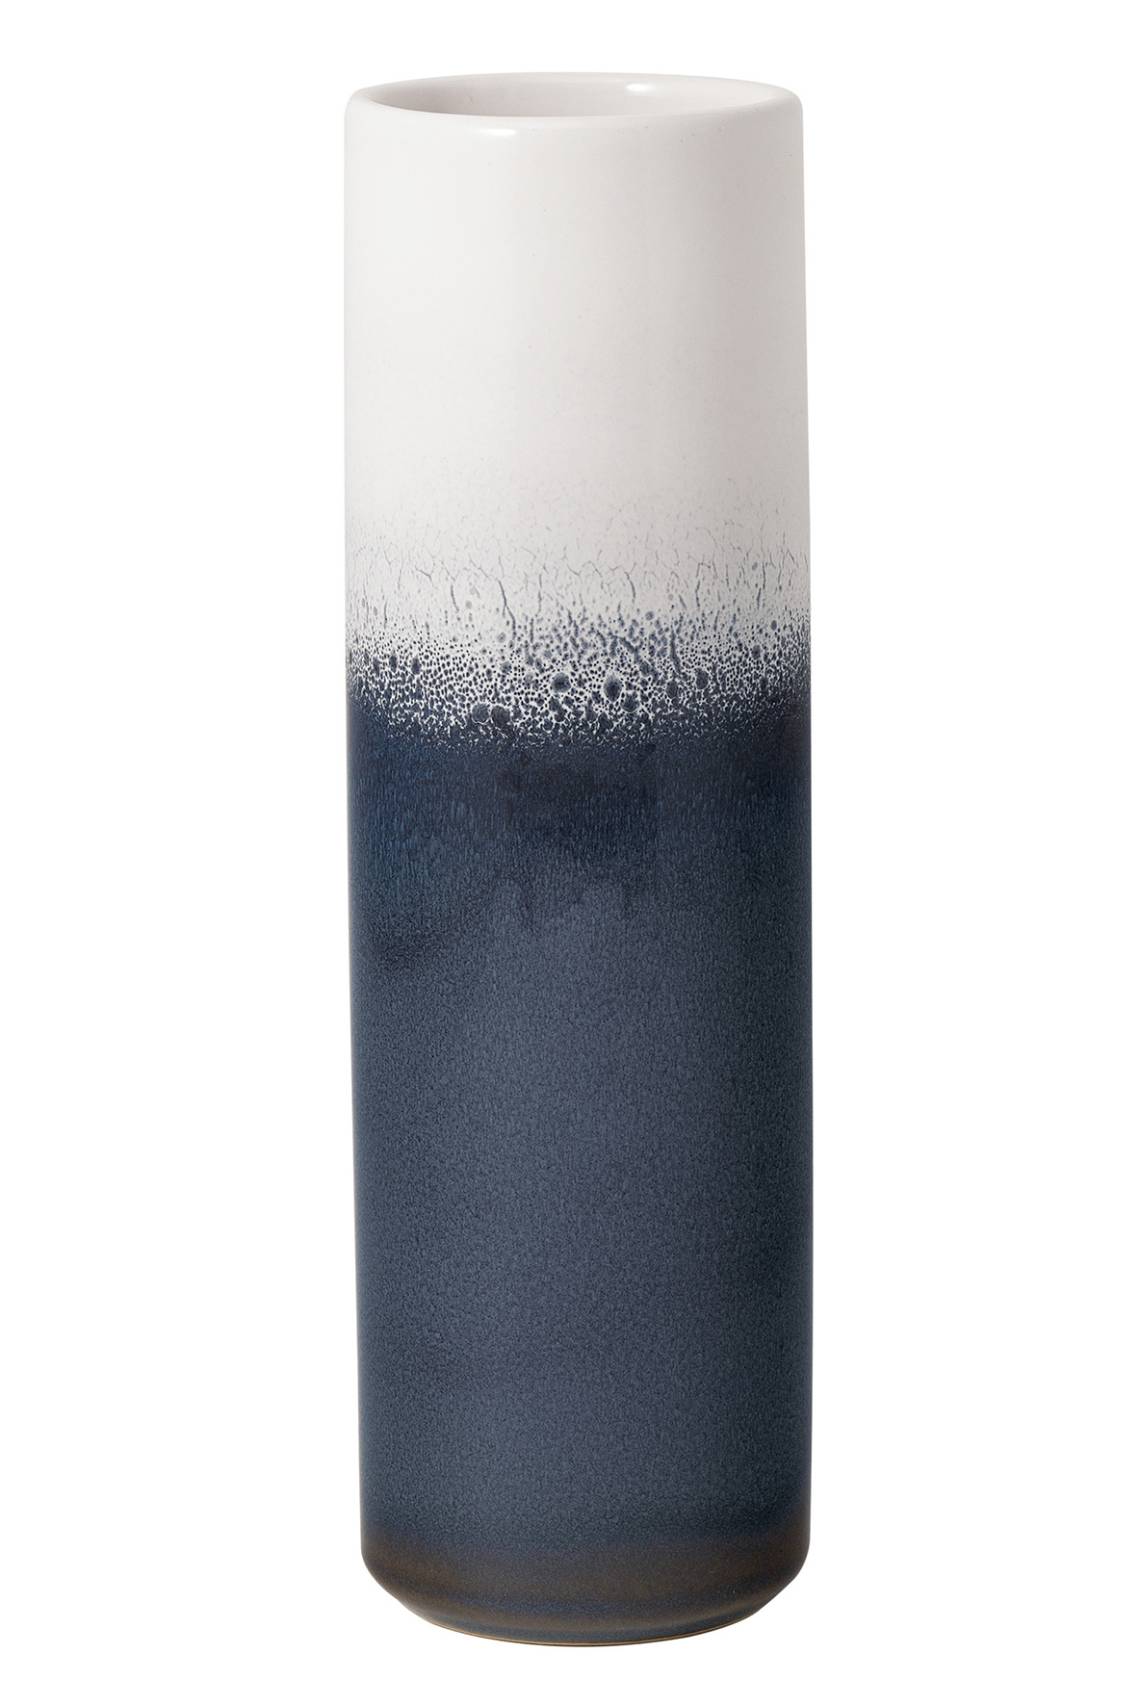 Villeroy & Boch - Vase Cylinder